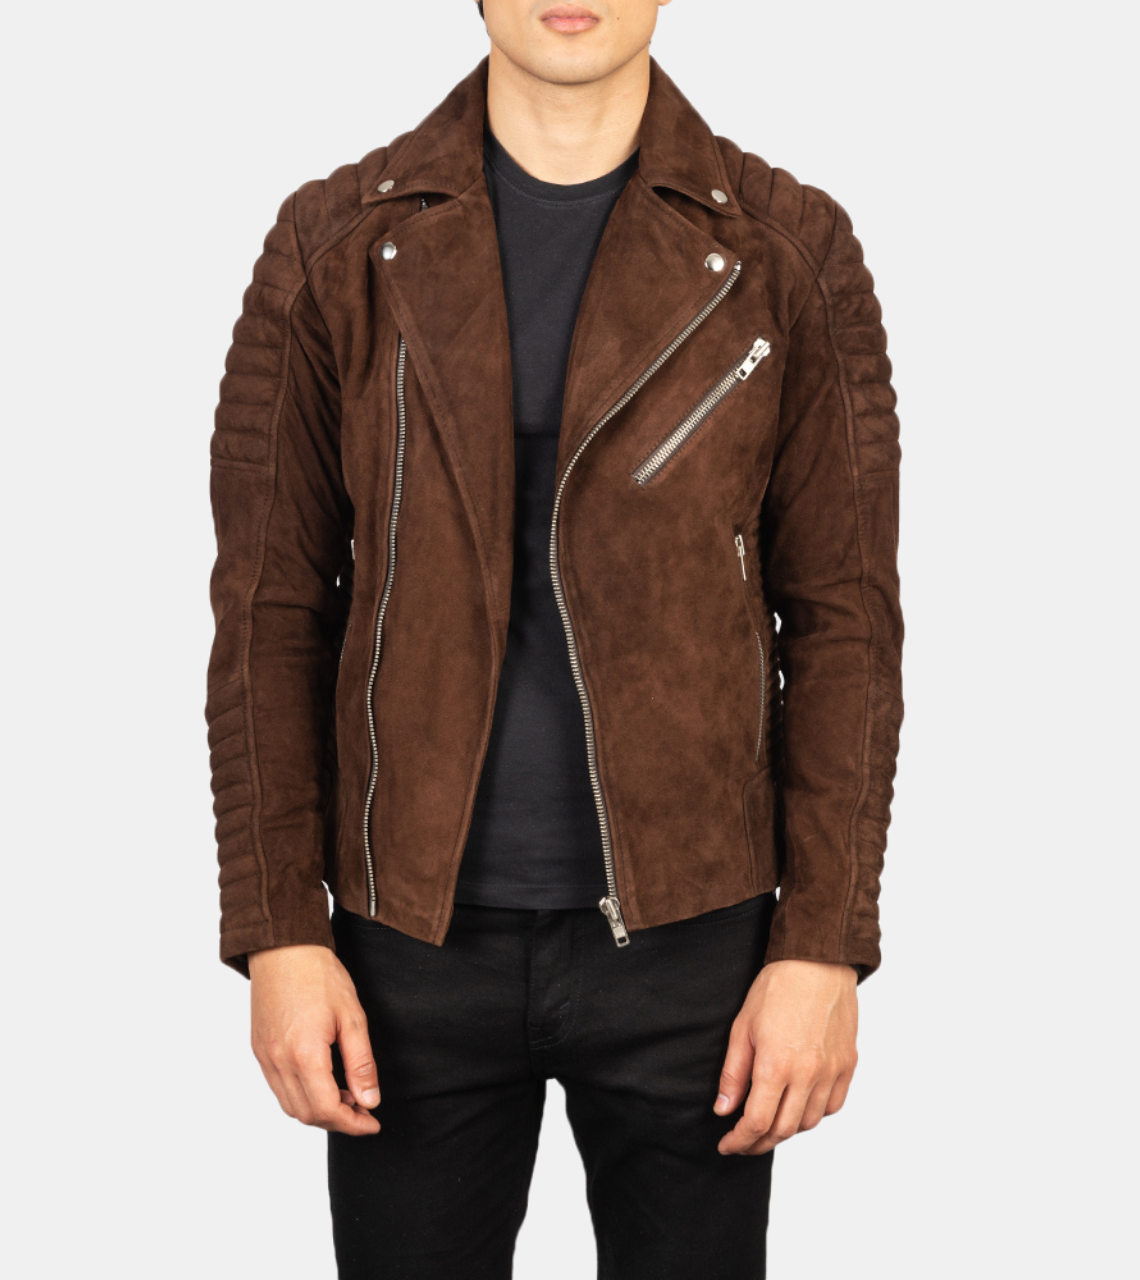  Guiliano Men's Brown Suede Leather Biker's Jacket 